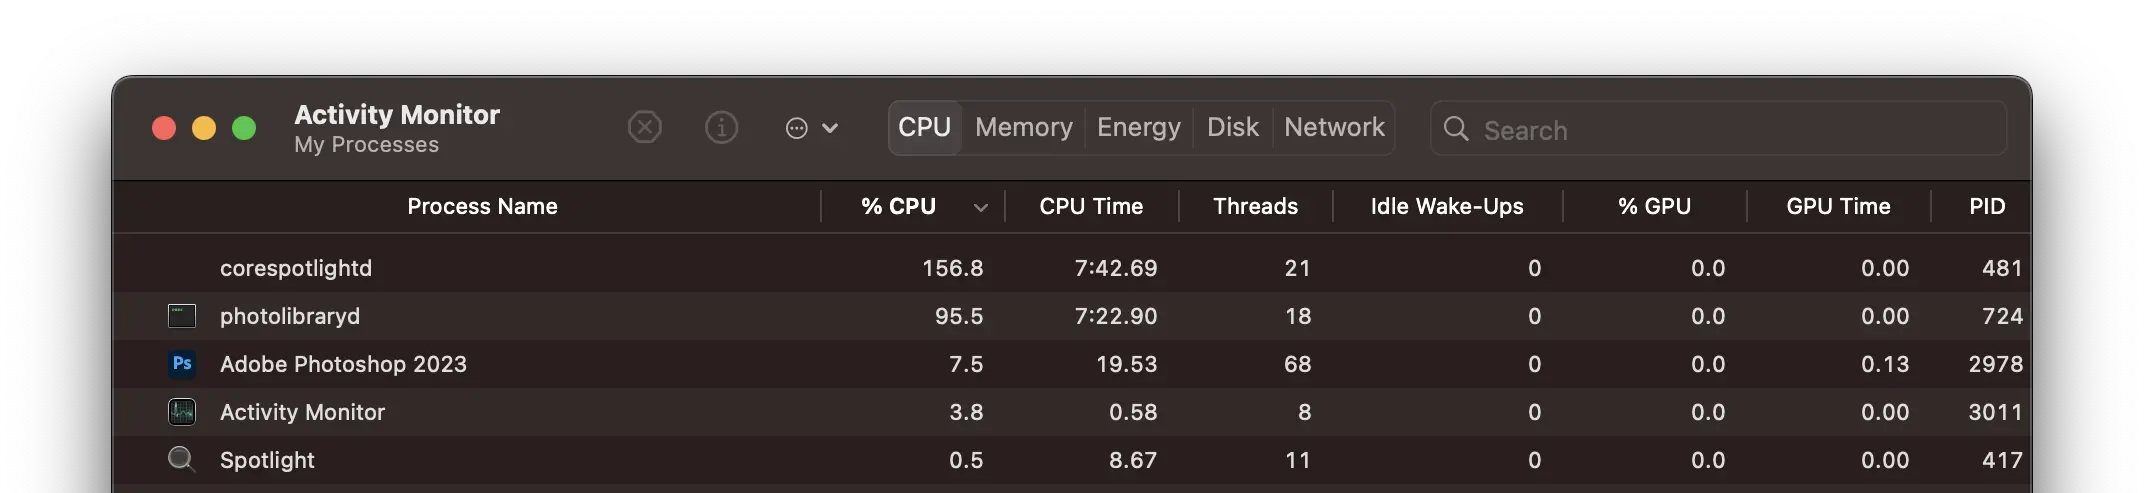 Kāpēc corespotlightd izmanto lielus resursus CPU